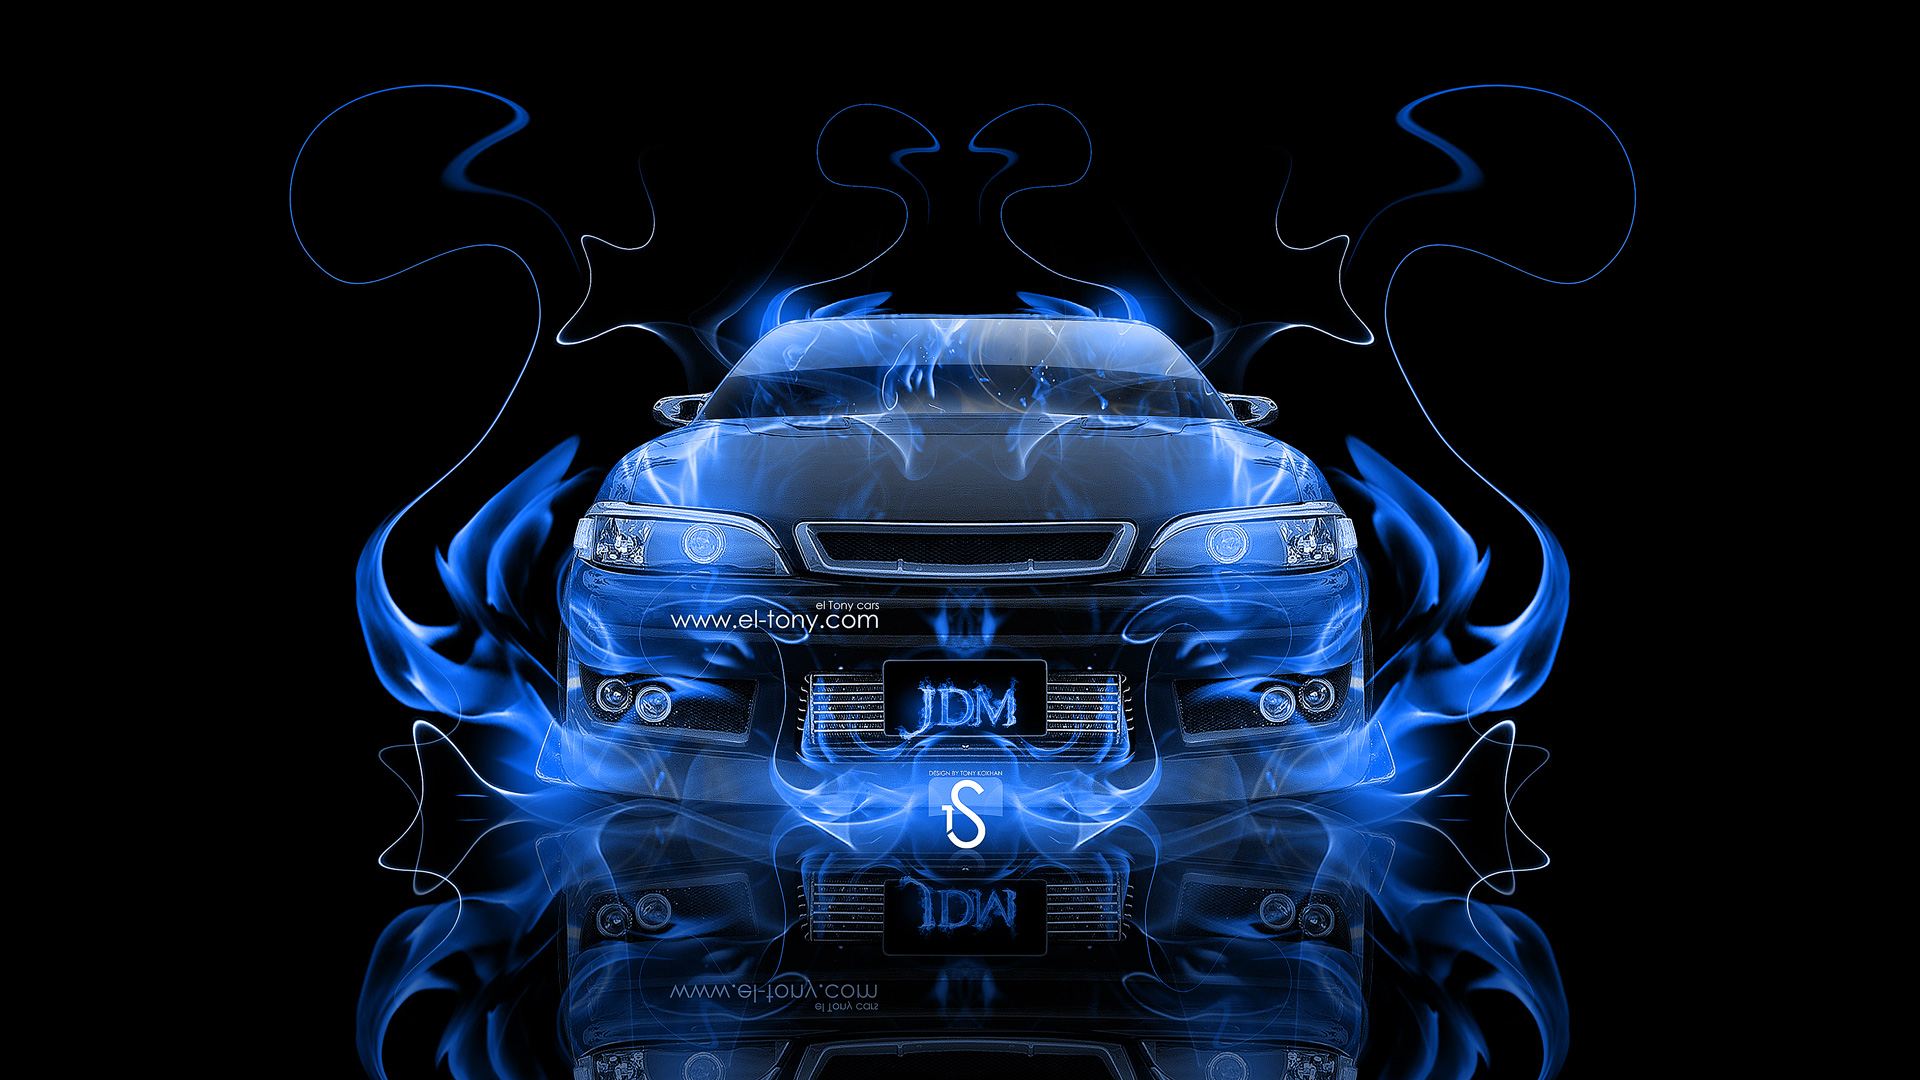 Hd Blue Fire Wallpaper Jdm fire abstract car 2013